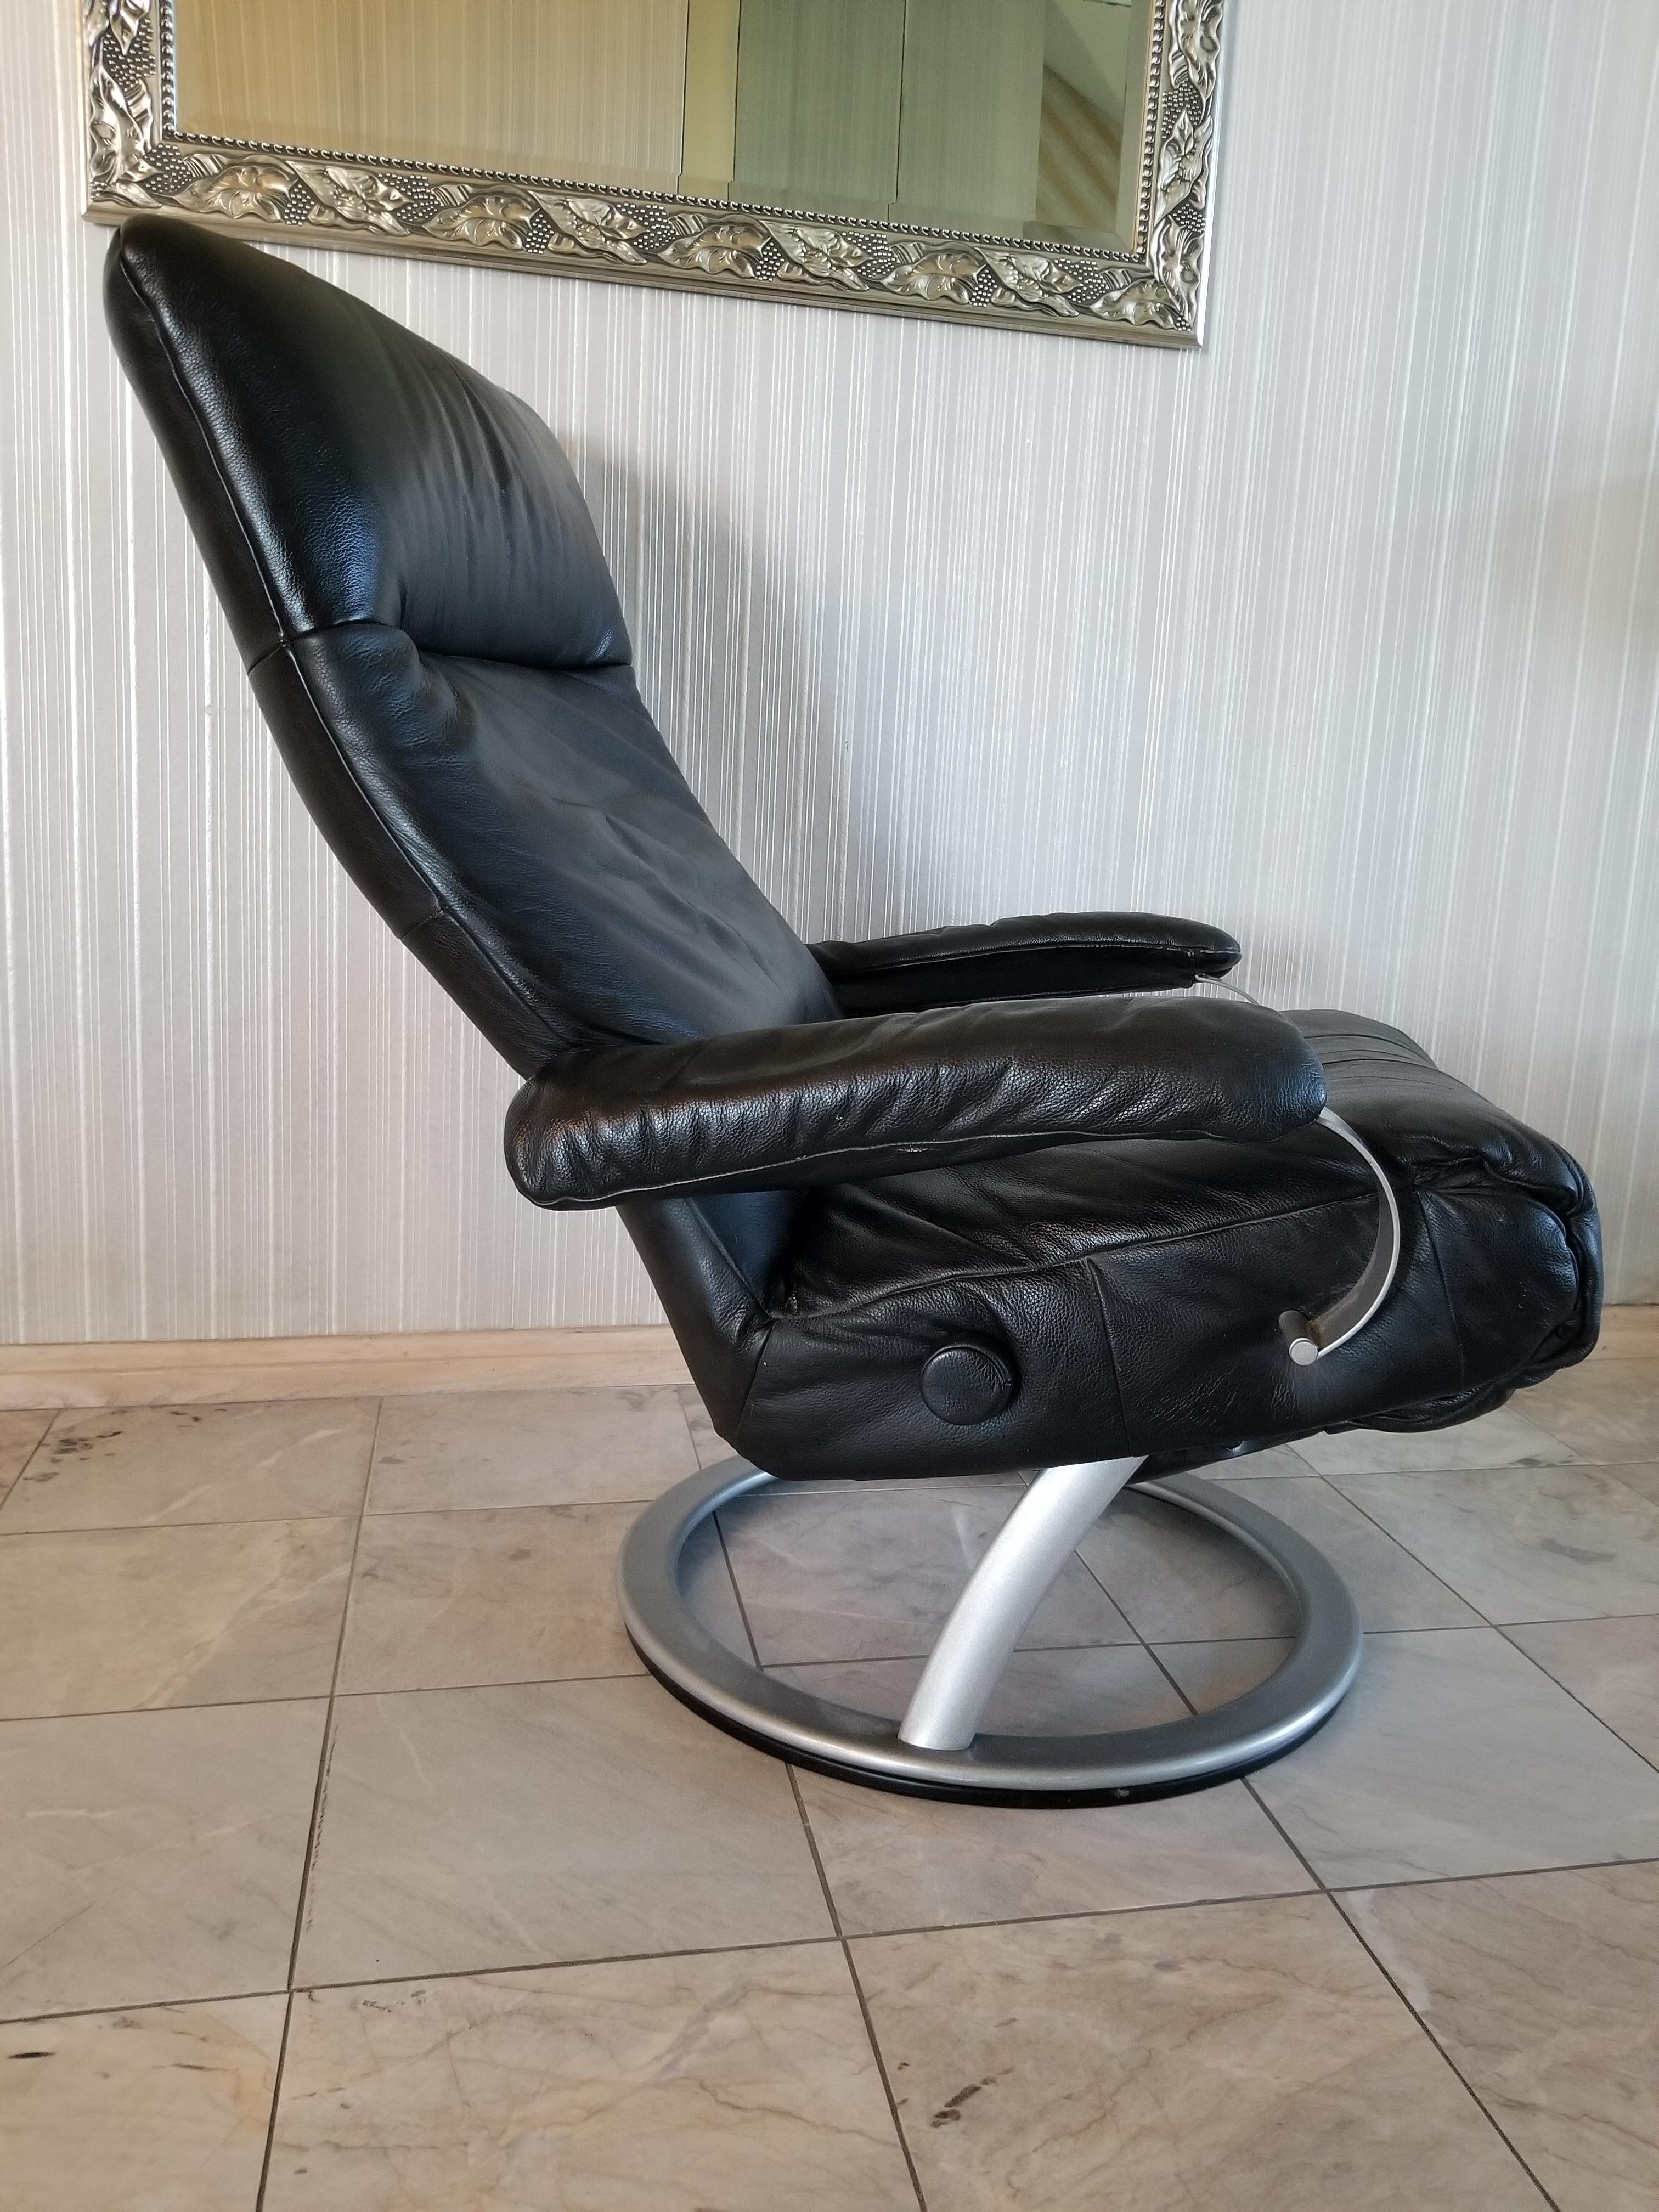 Percival Lafer Modern Leather Recliner Ergonomic Kiri Swivel Lounge Chair Brazil 1